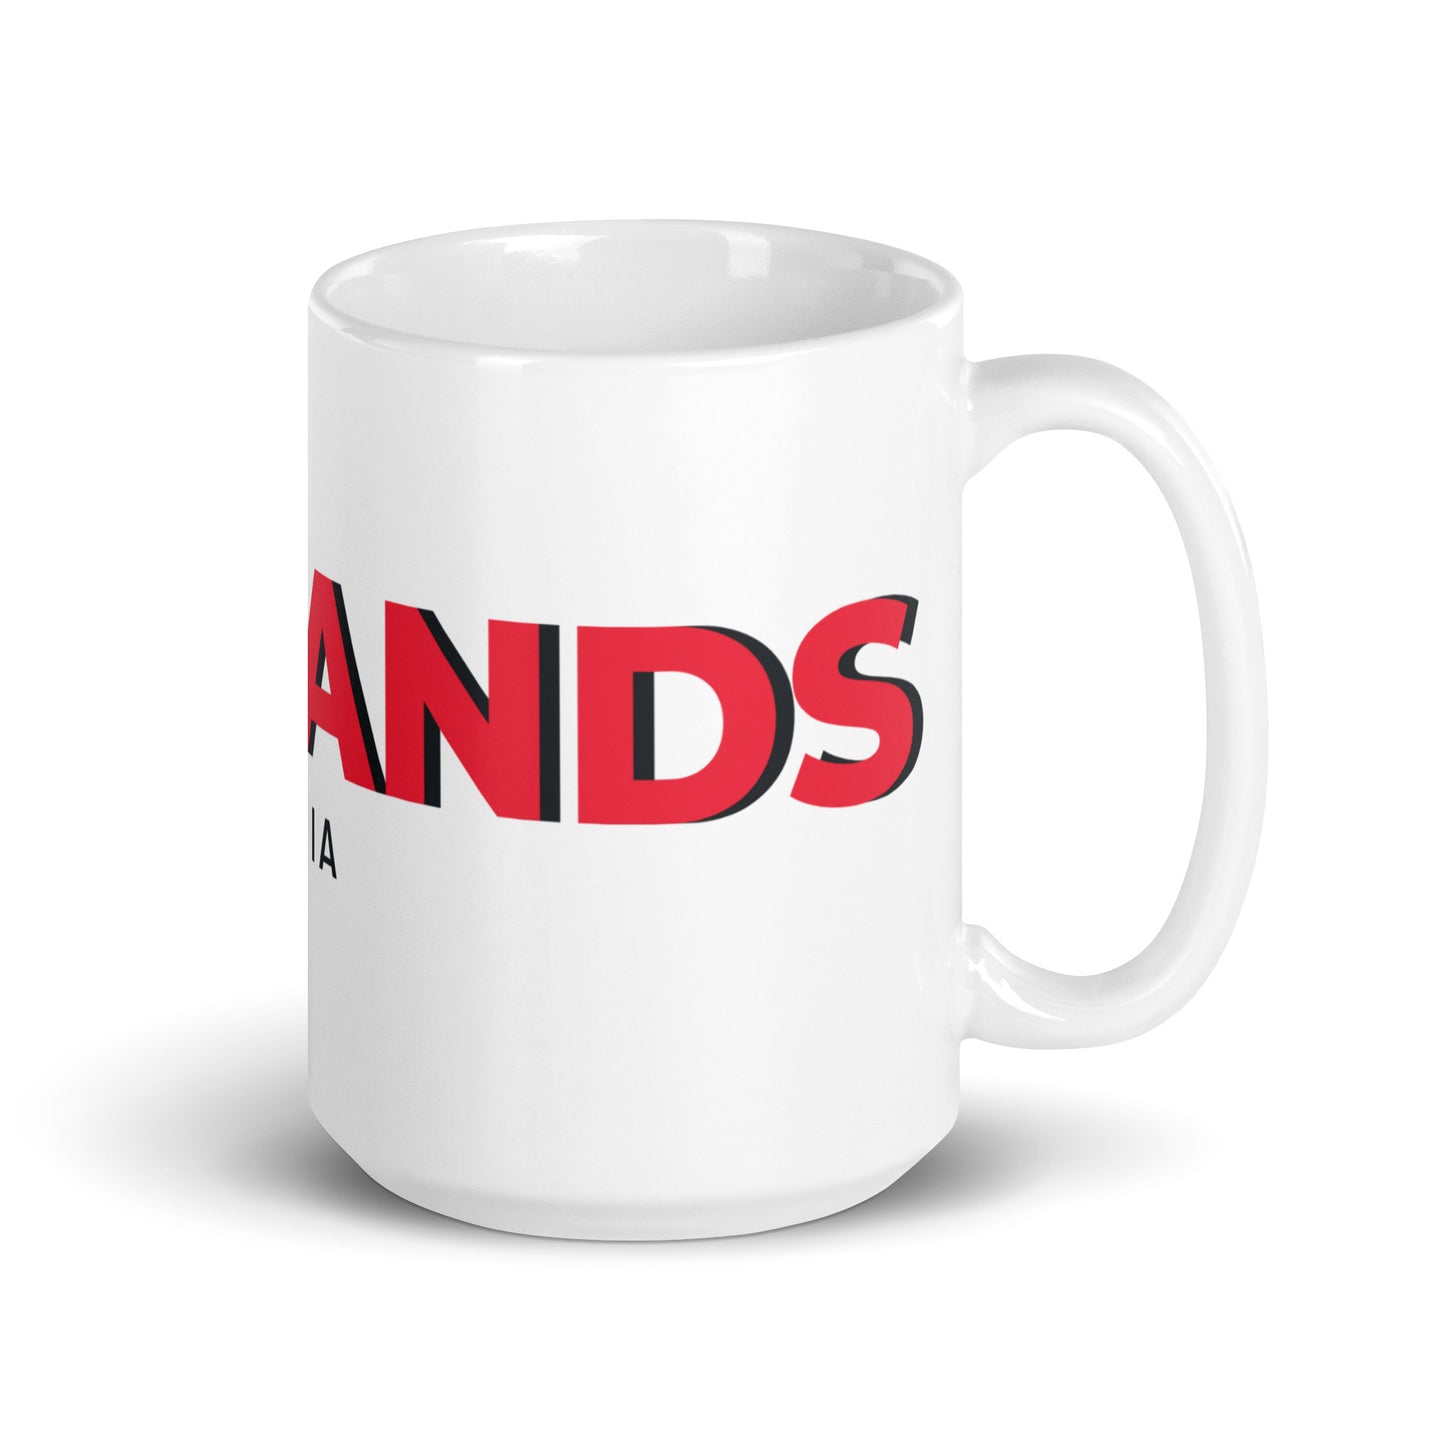 Badlands large logo White glossy mug